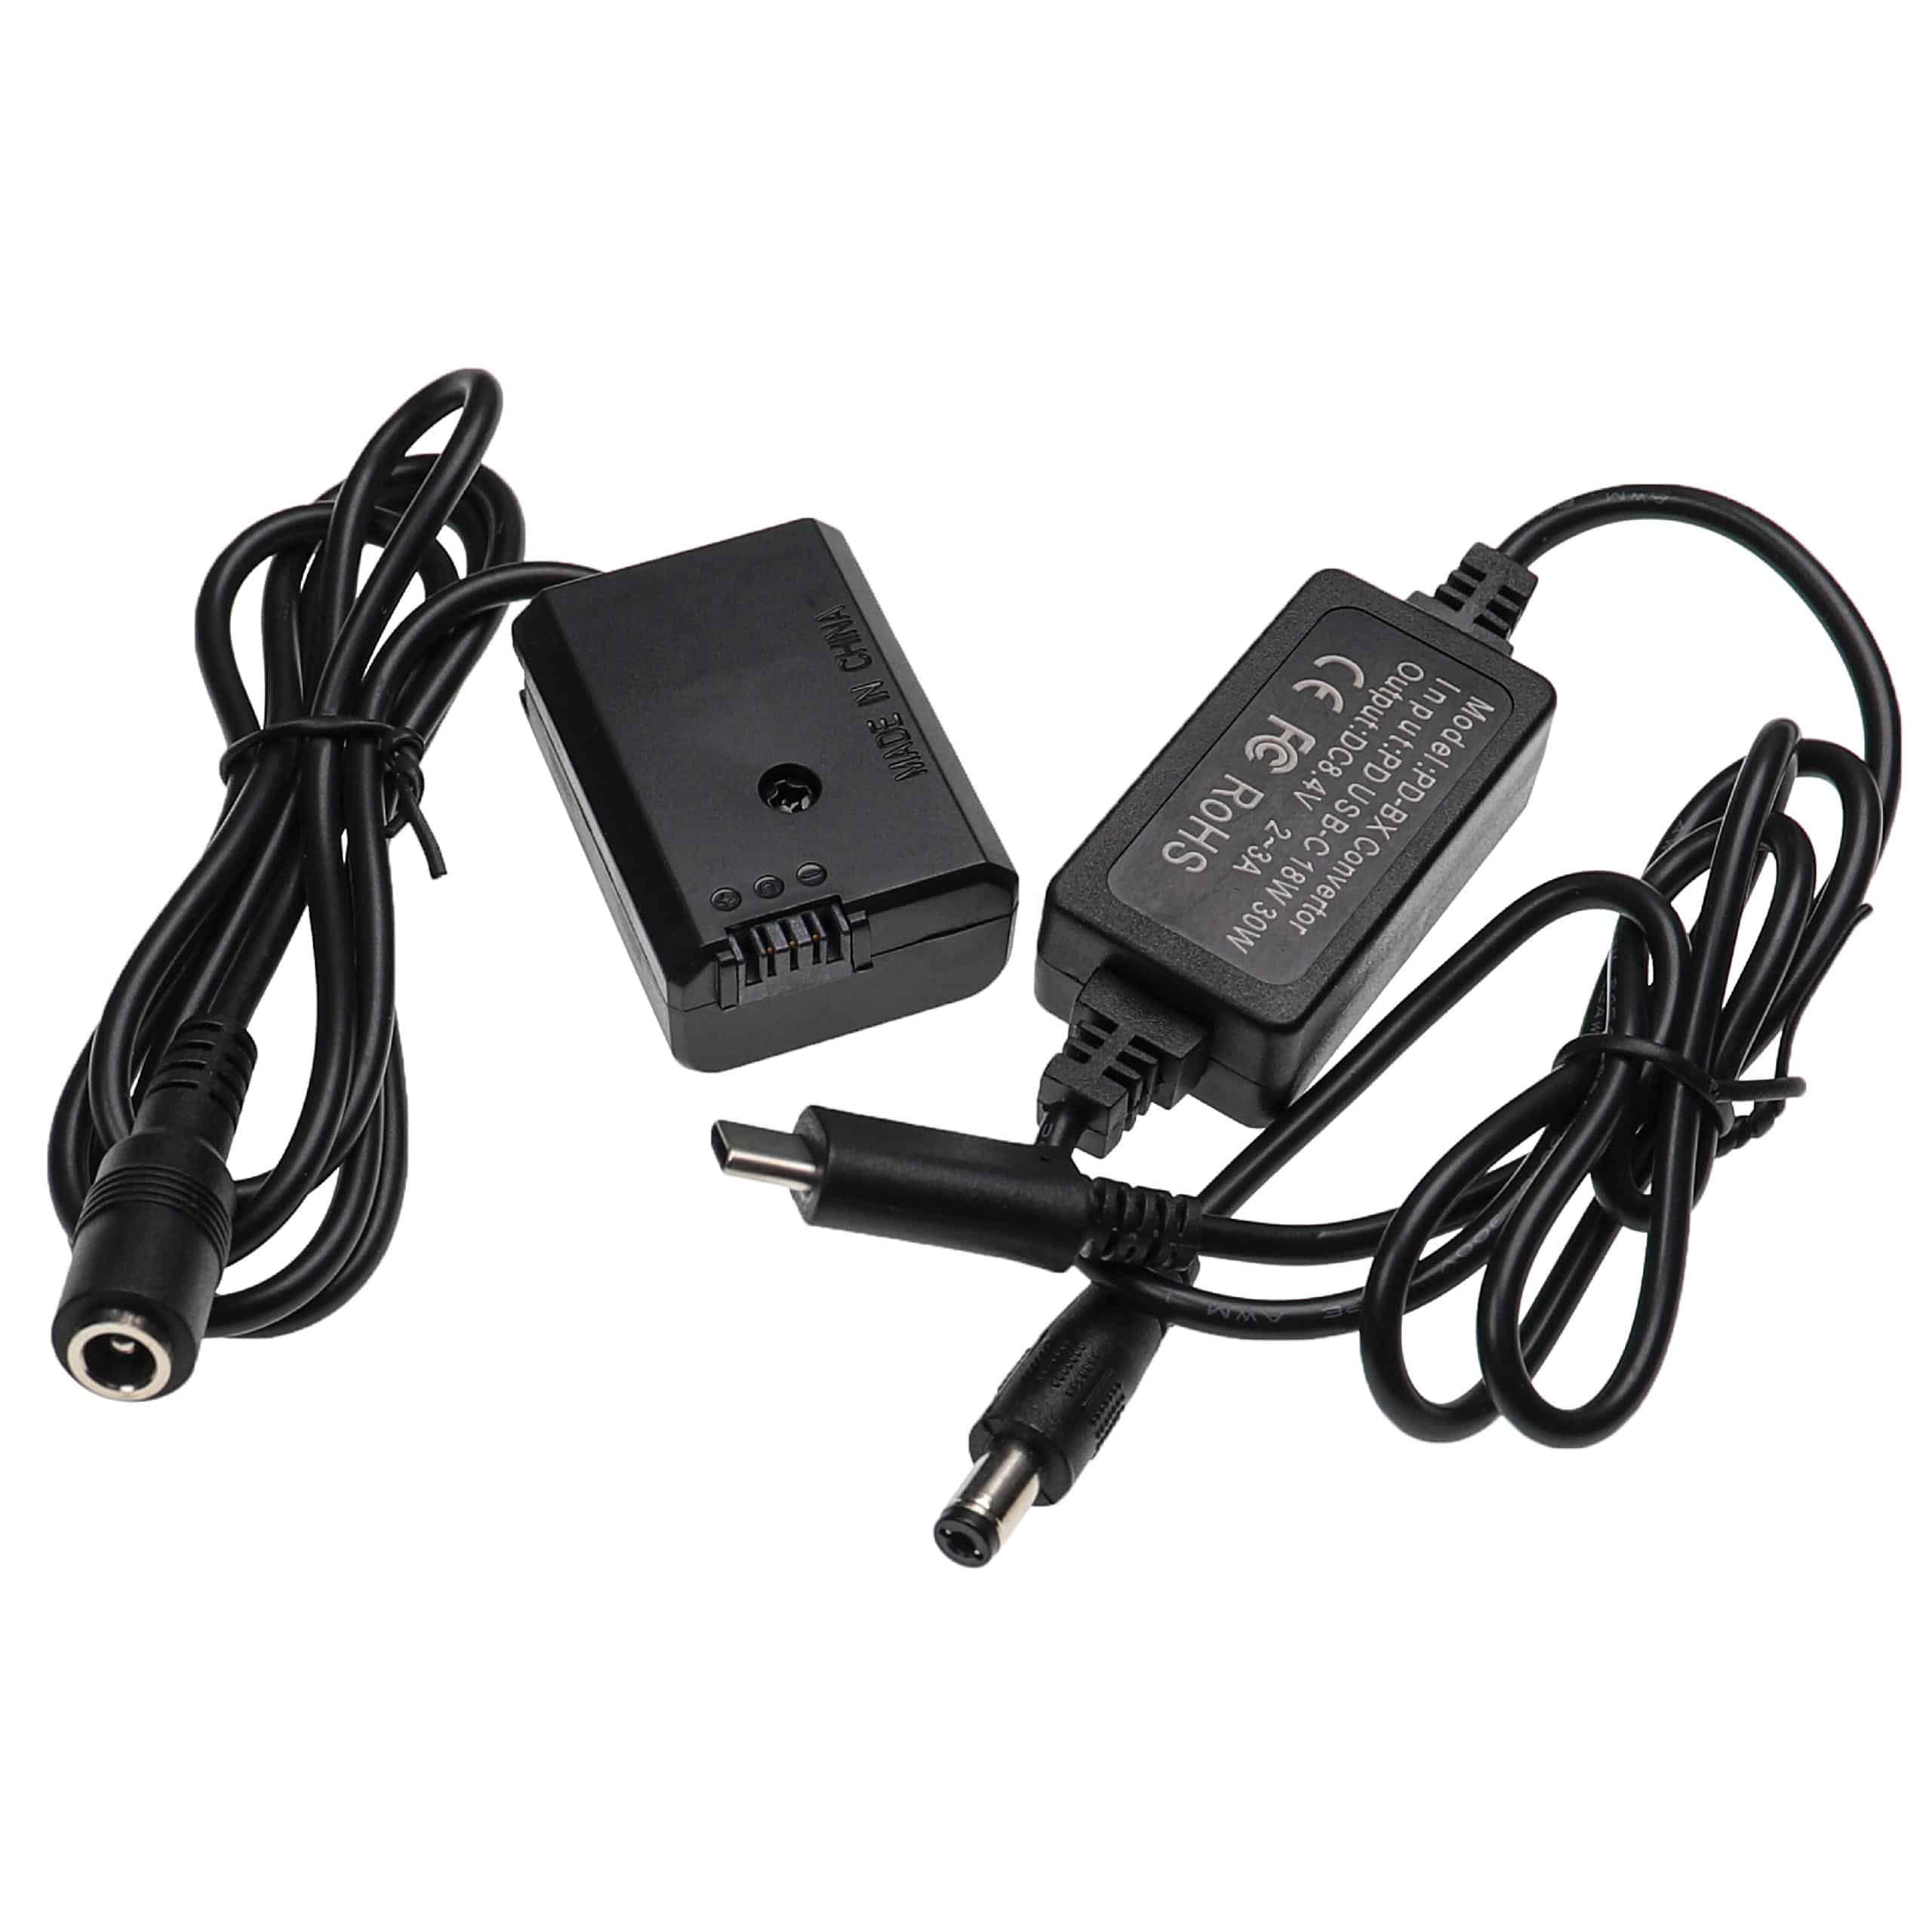 Zasilacz USB do aparatu zam. AC-PW20 + adapter zam. Sony NP-FW50 - 2 m, 8,4 V 3,0 A